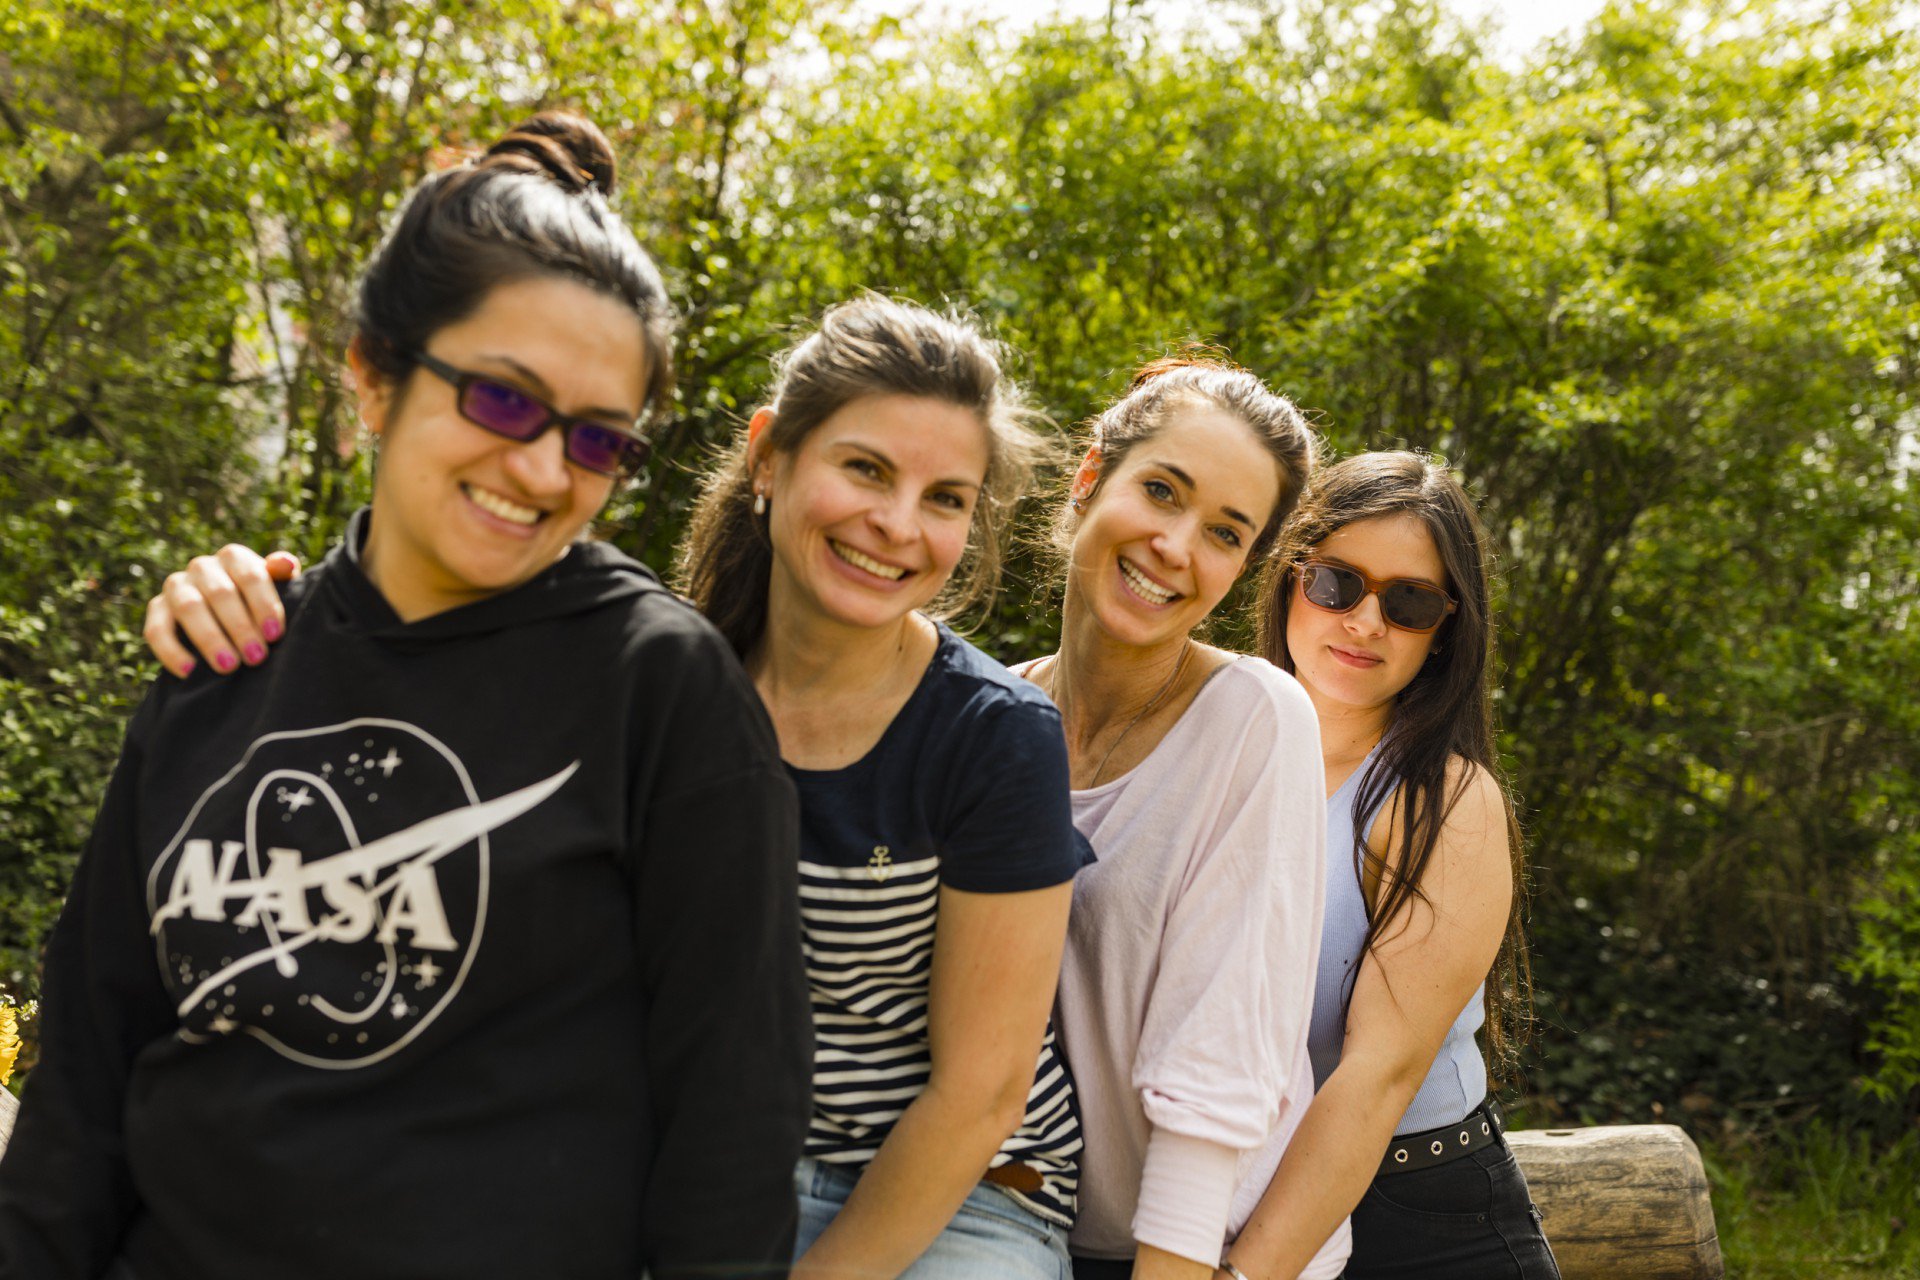 El equipo del HOLA campamento creativo y lúdico para niños. De izquierda a derecha: Camila Manosalva, Kelly Parra Camacho, Eva Winkelmann y Laura Valero